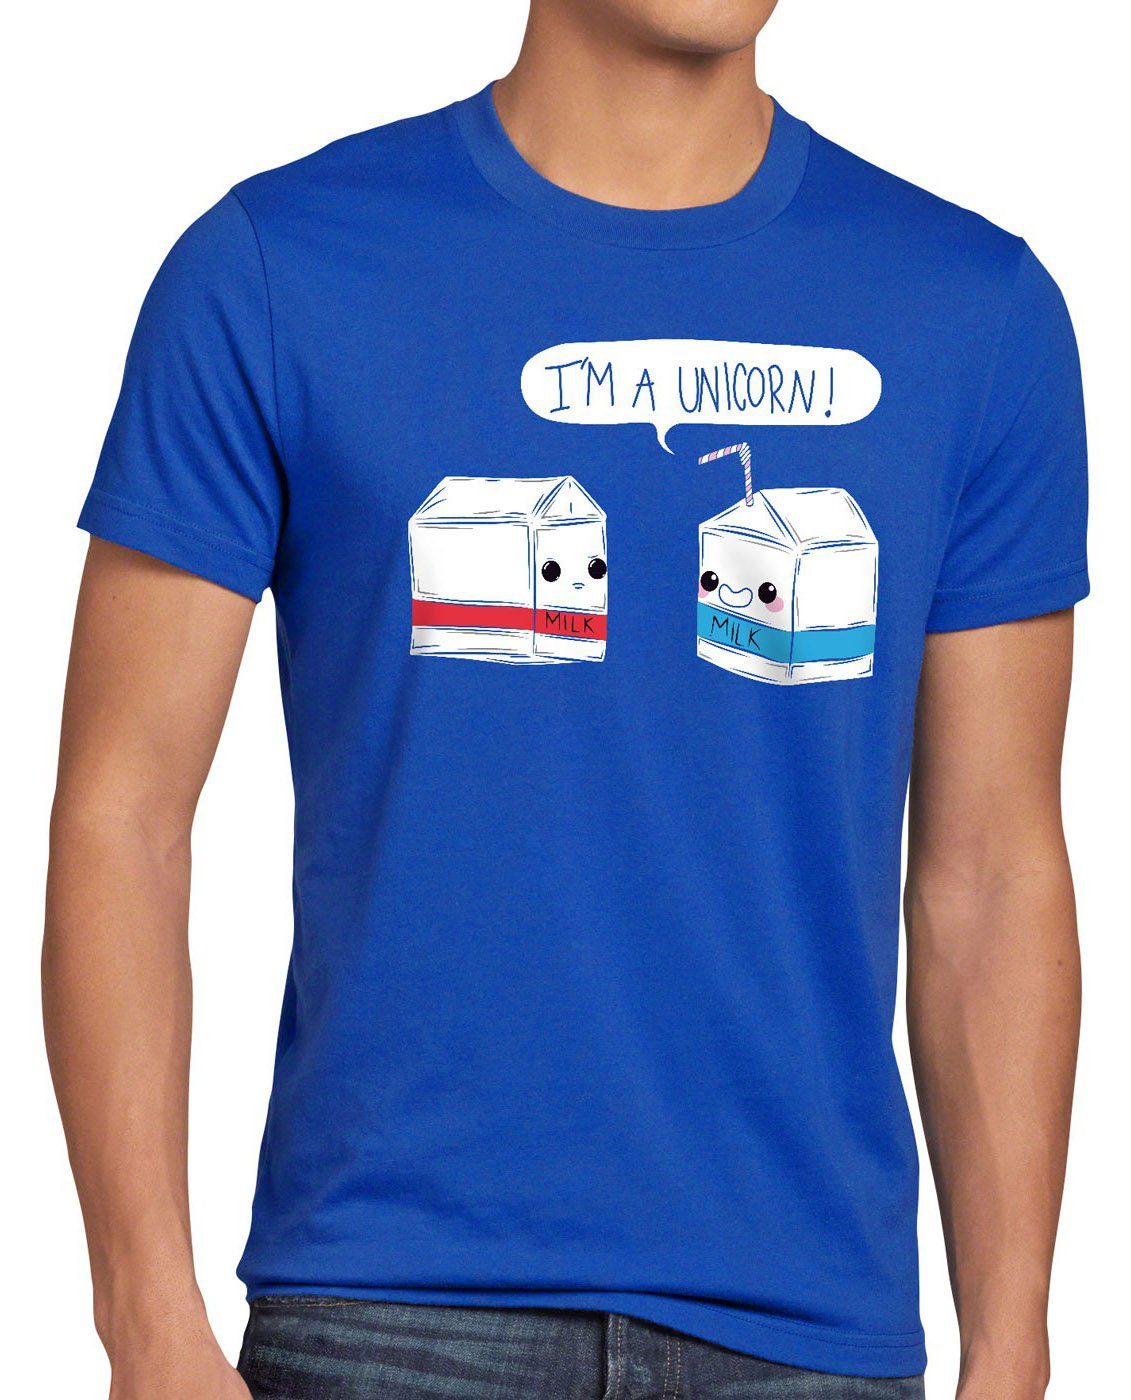 T-Shirt Print-Shirt a am Milchtüte Milch Milk blau style3 Einhorn Spruch I Fun Unicorn Herren Funshirt